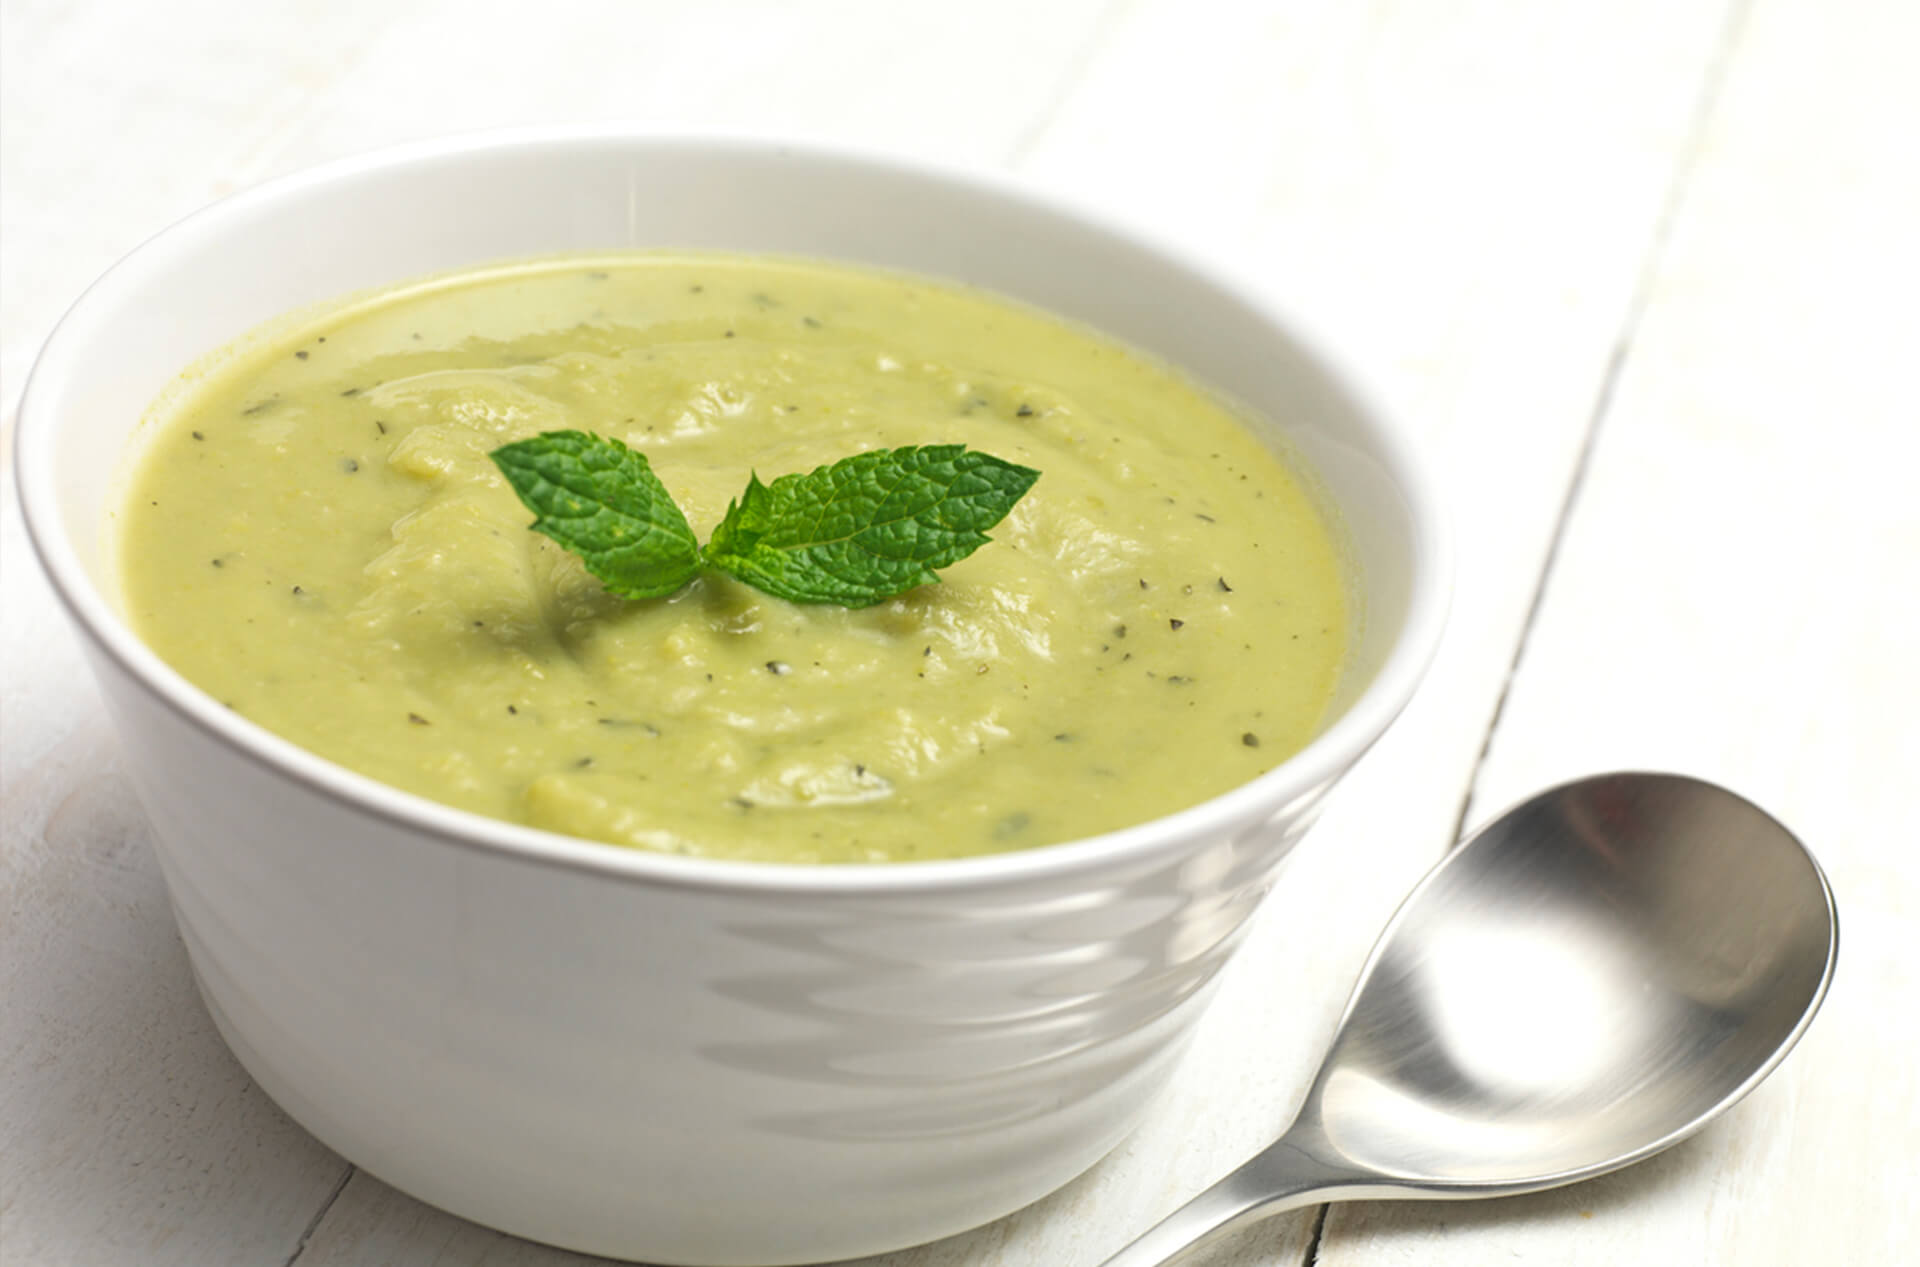 kale pureed soup